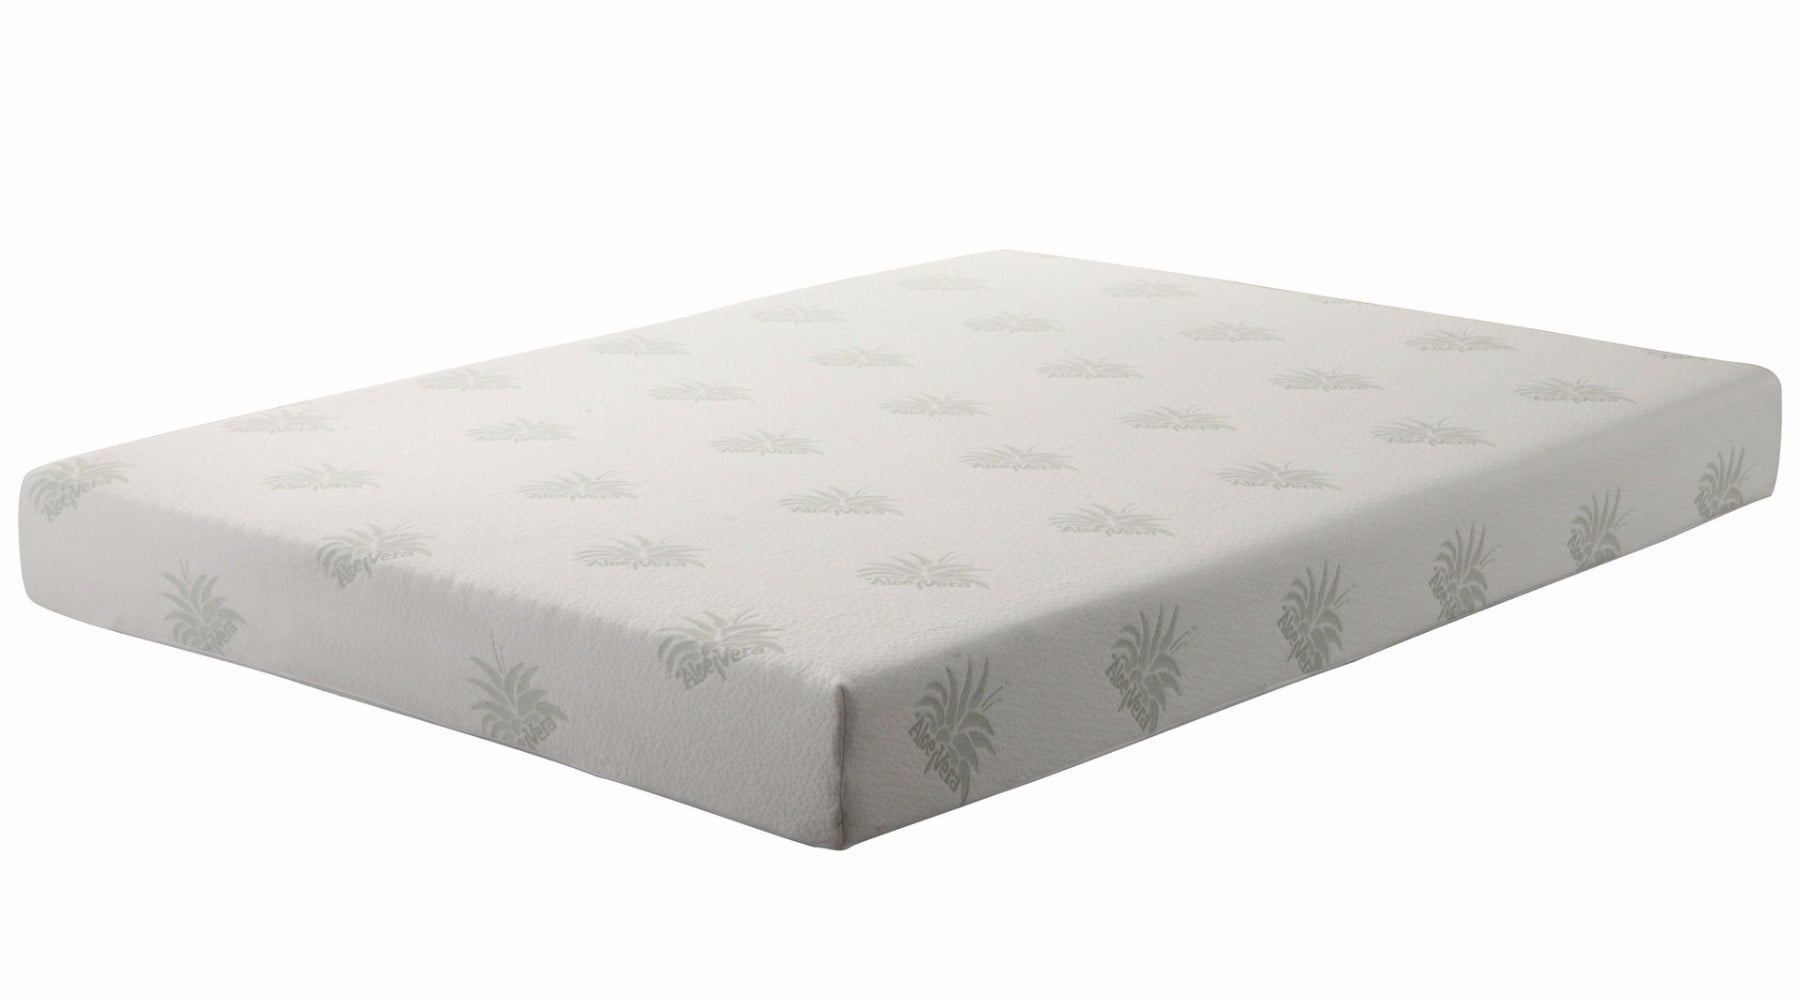 high density foam mattress walmart